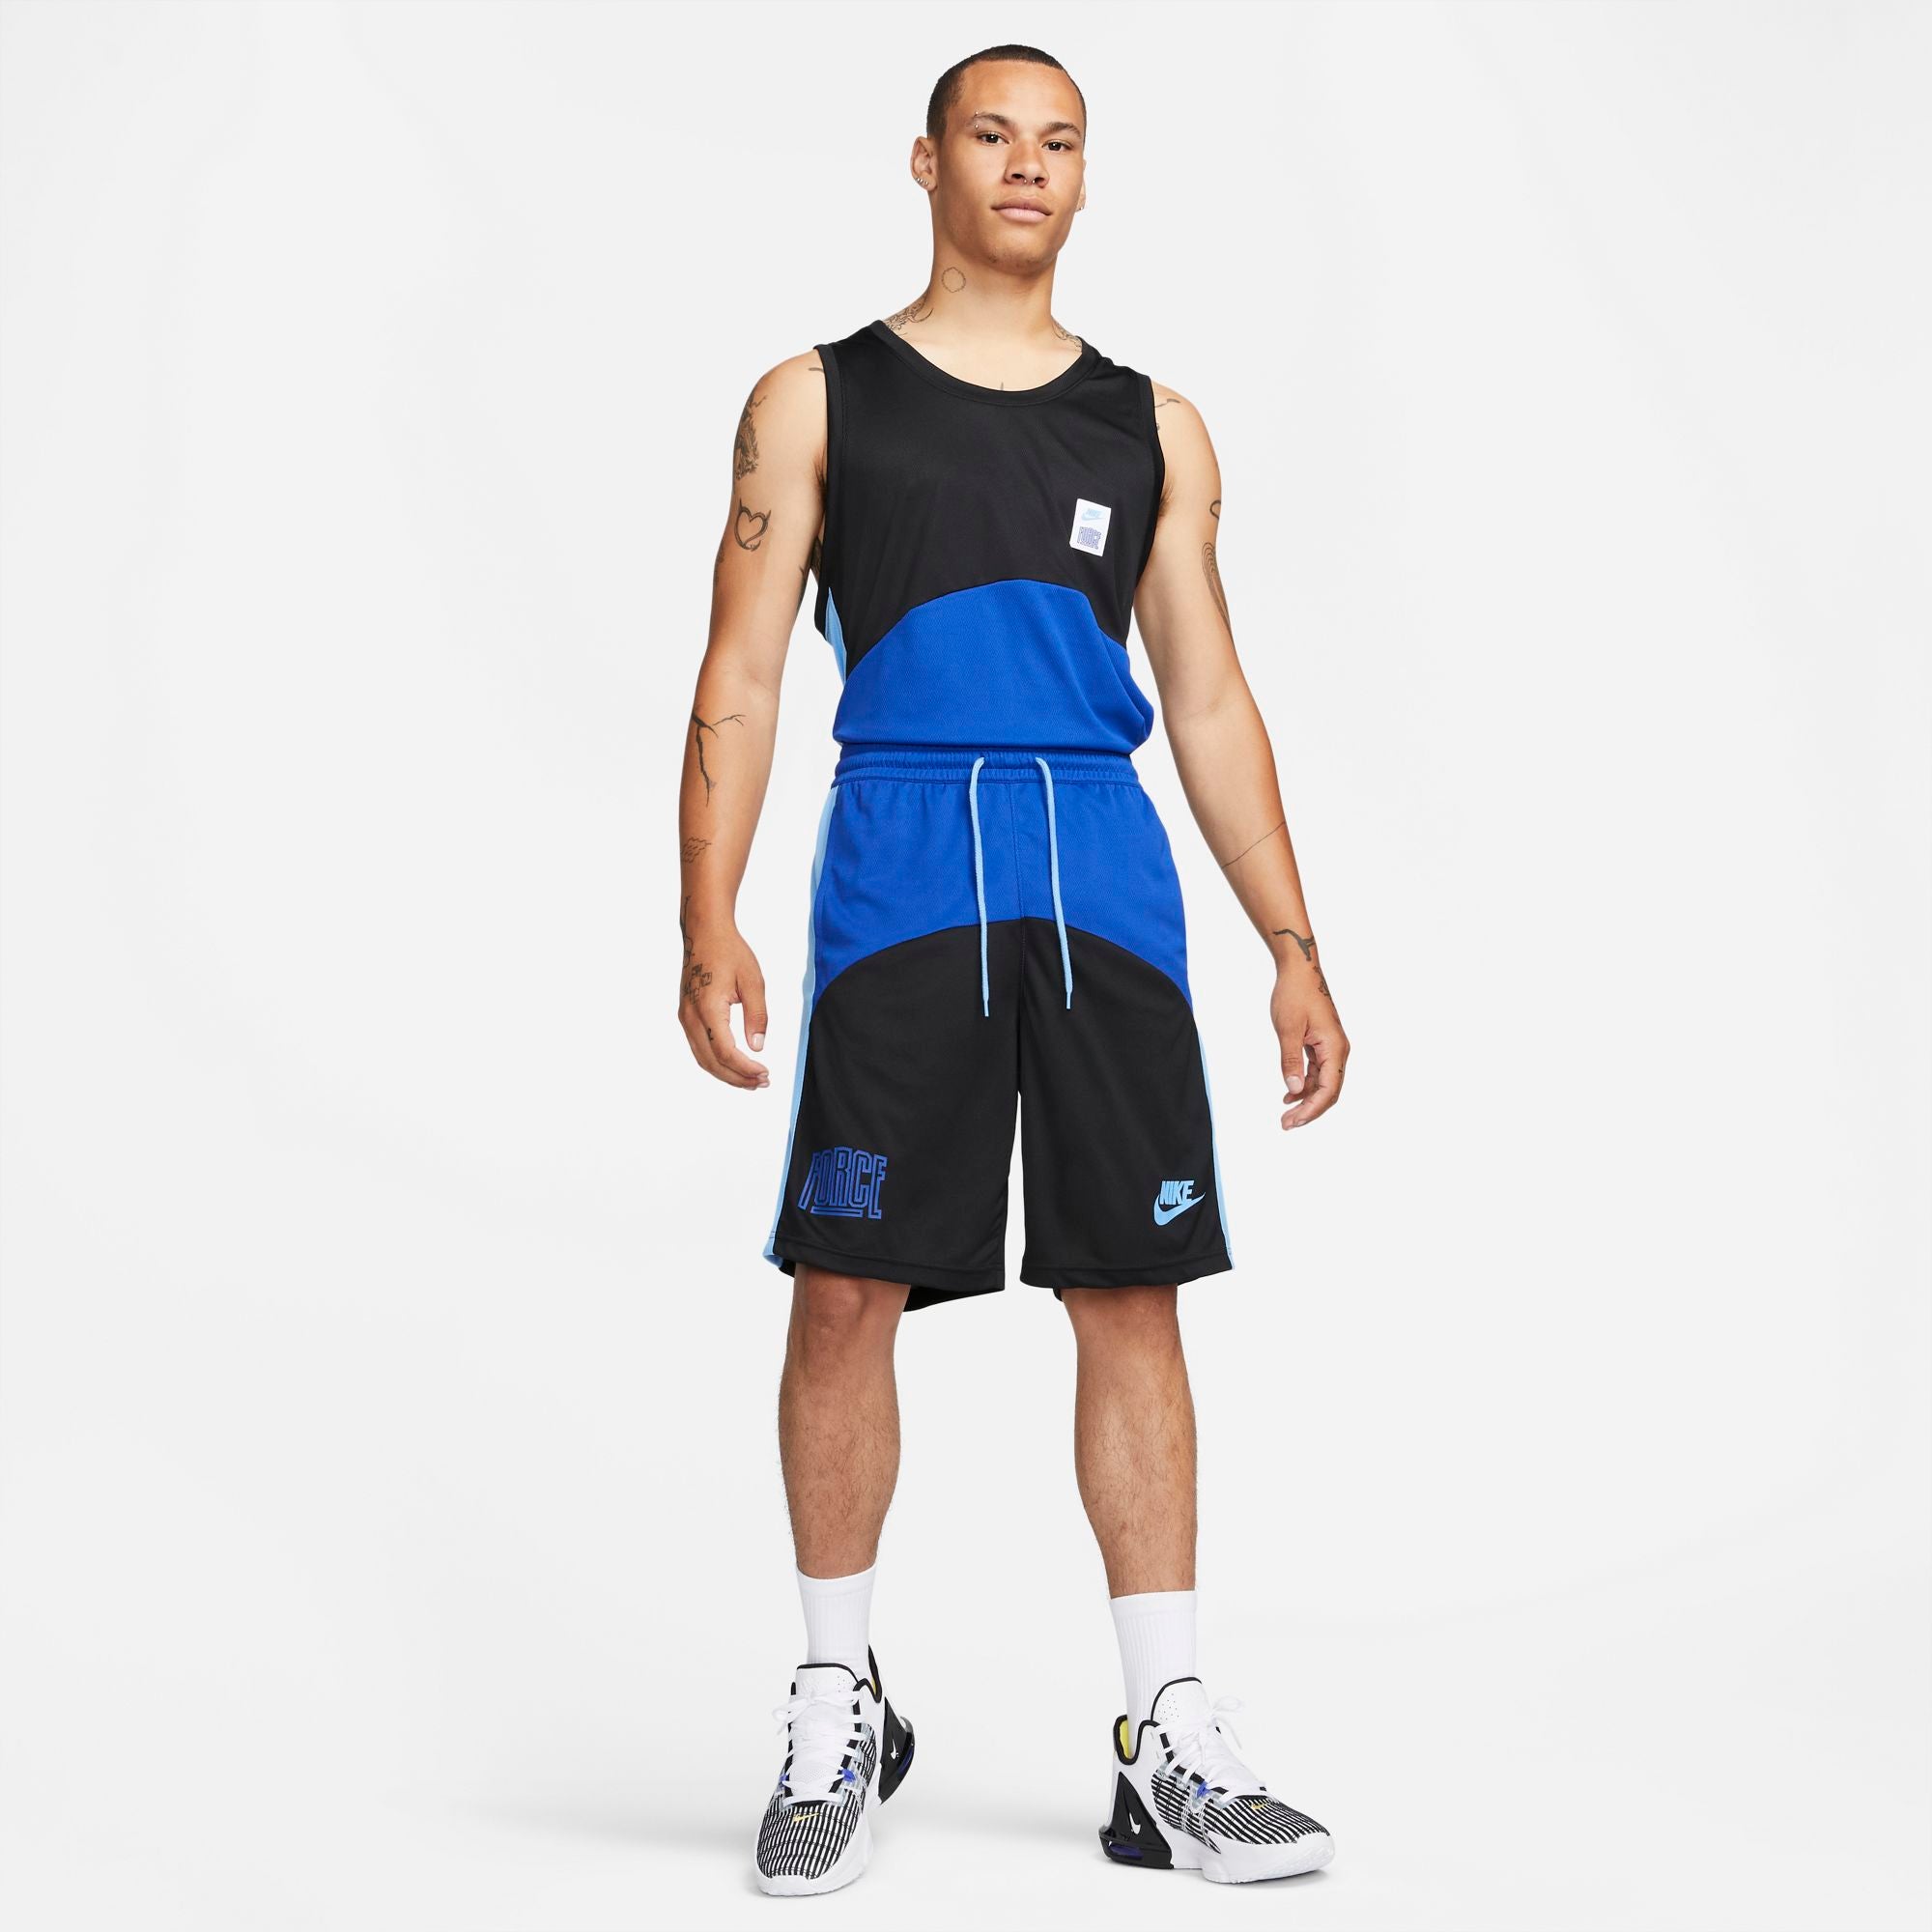 Nike Starting 5 Men's Dri-FIT Basketball Jersey